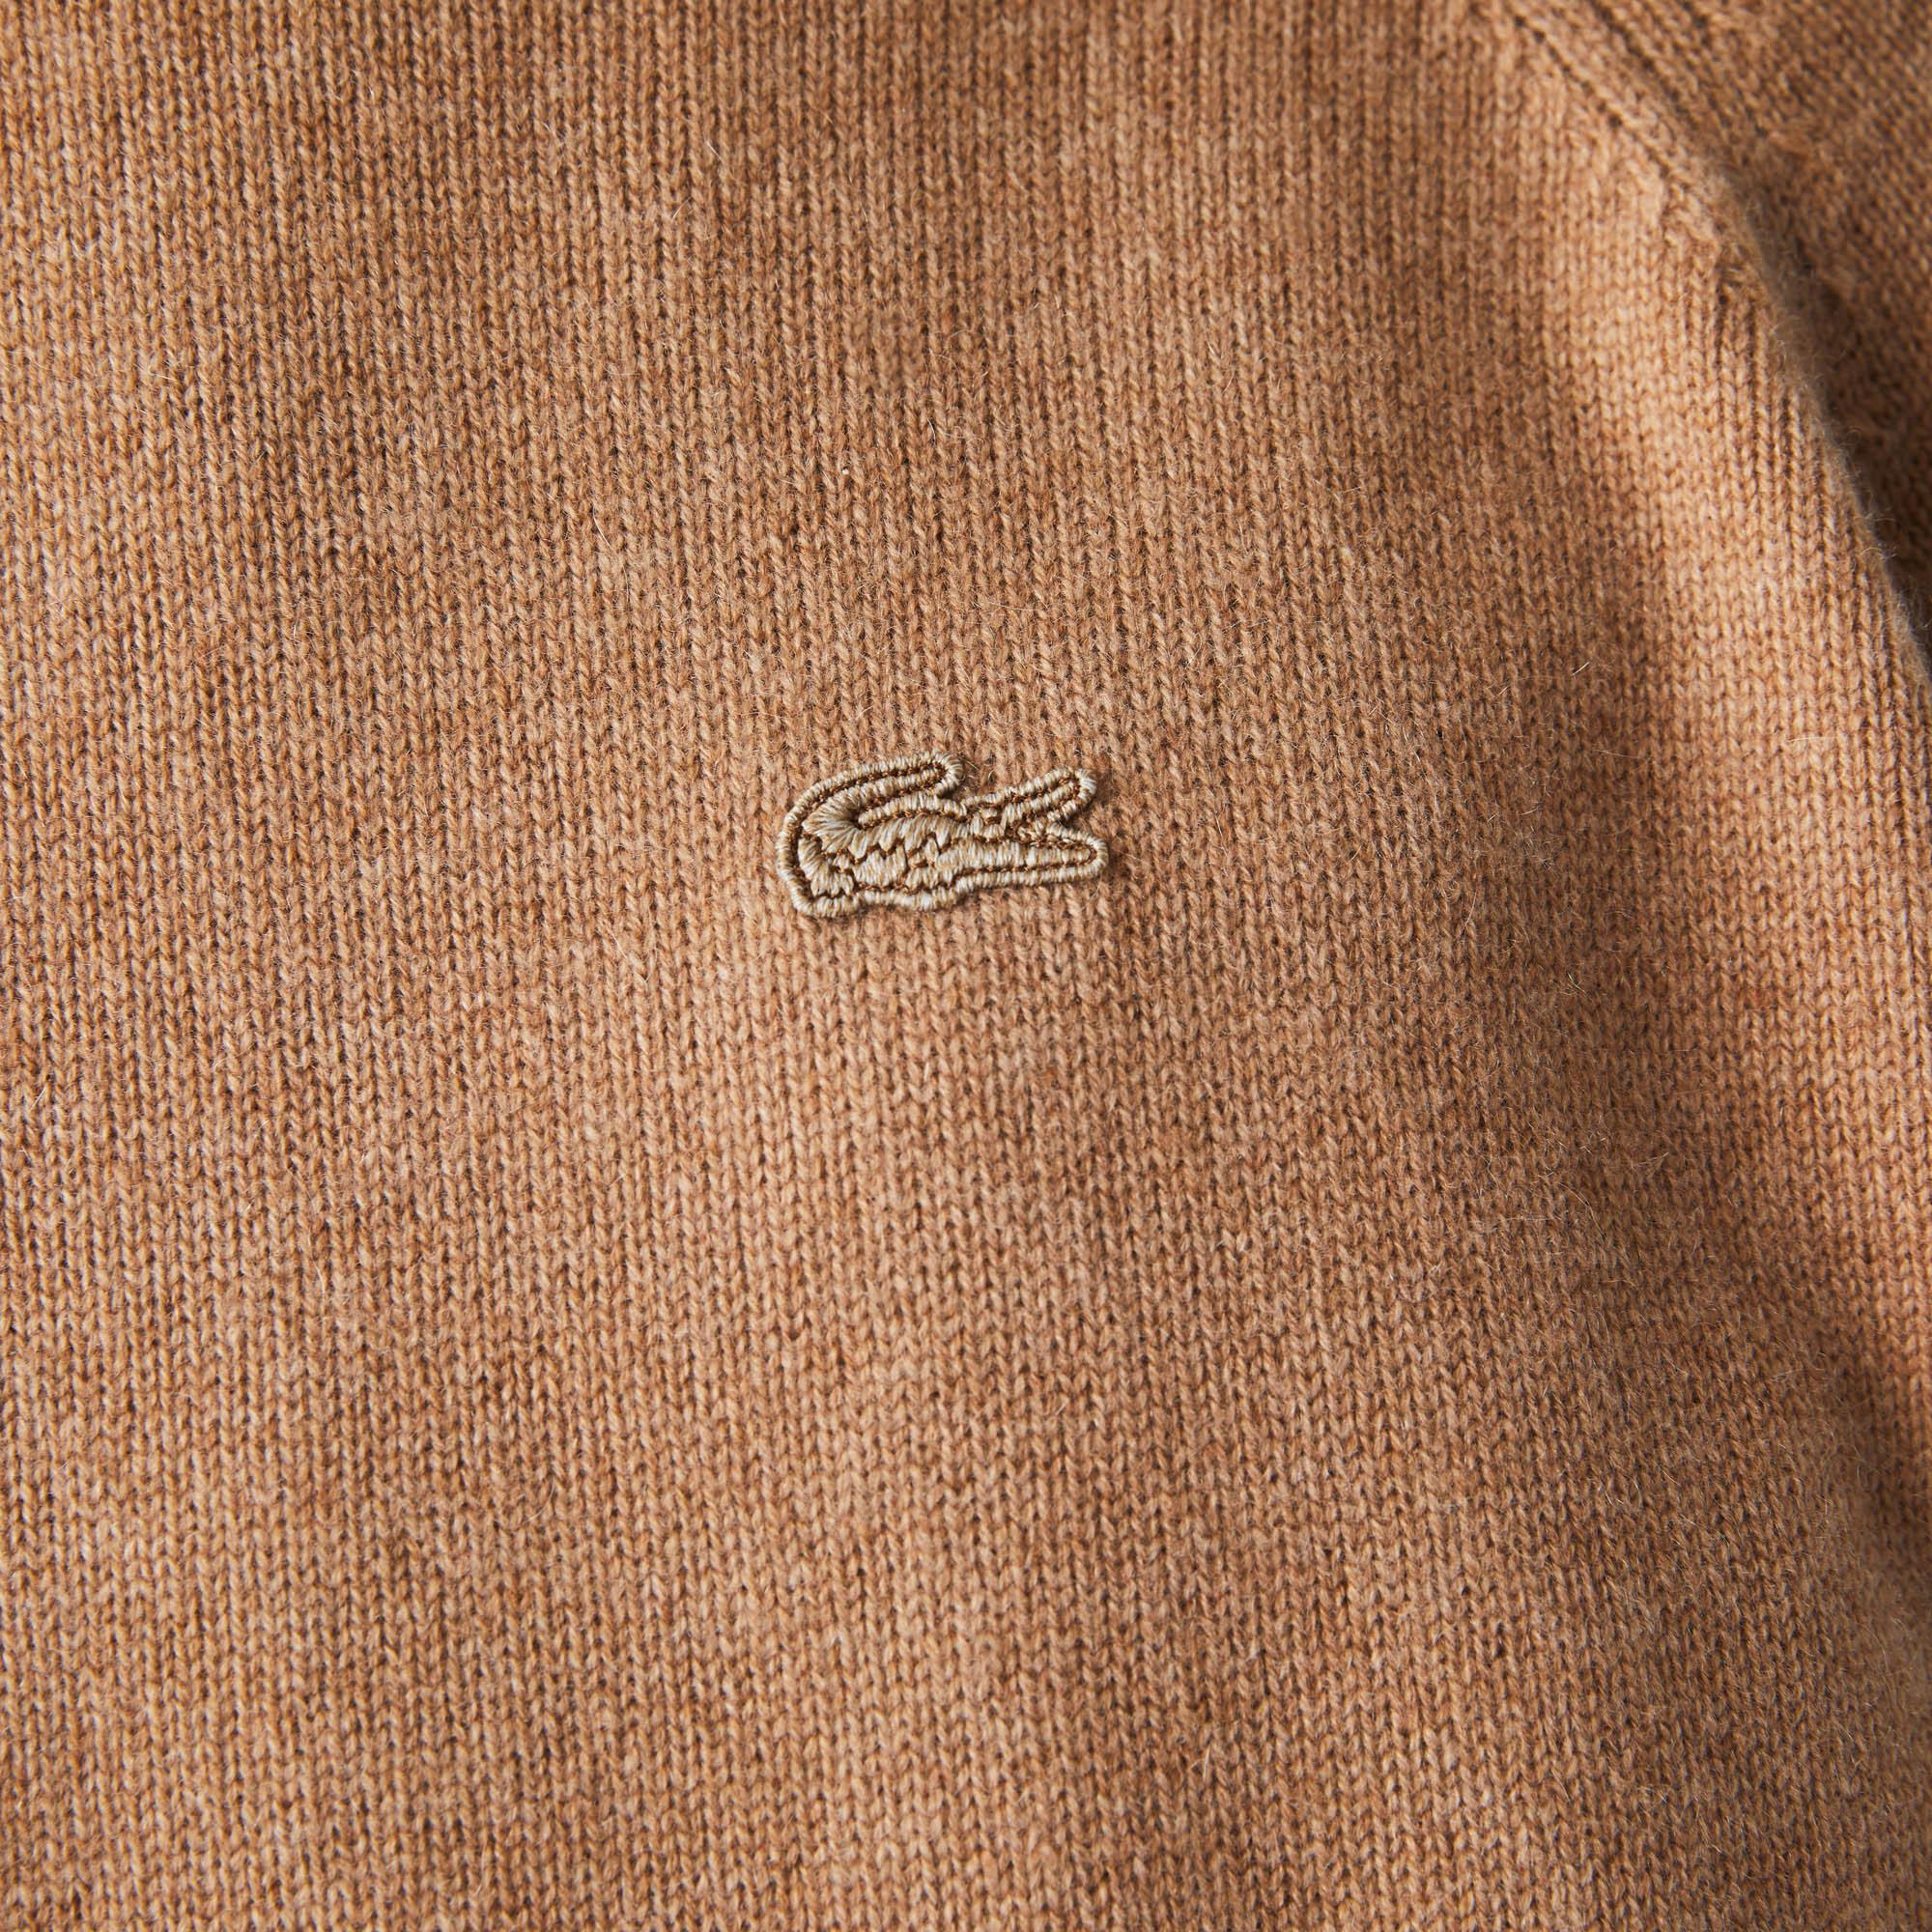 Lacoste damski sweter wełniany z okrągłym dekoltem